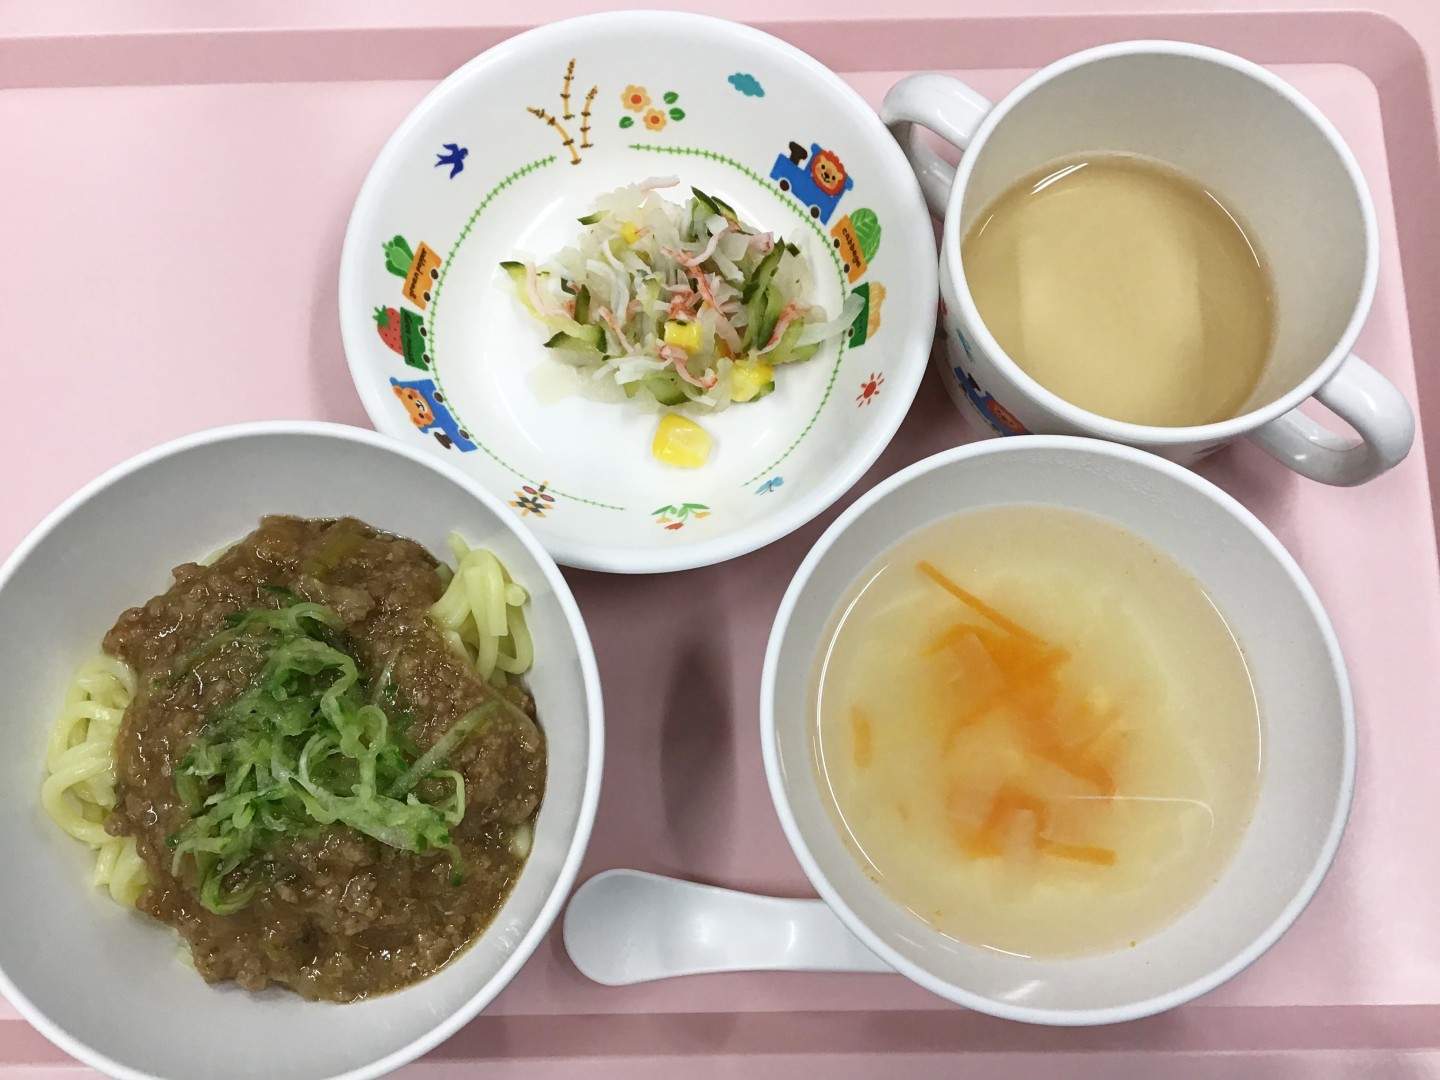 ジャージャー麺 きゅうりと大根の酢の物 たまねぎの中華スープ 企業主導型保育園 Fキッズ